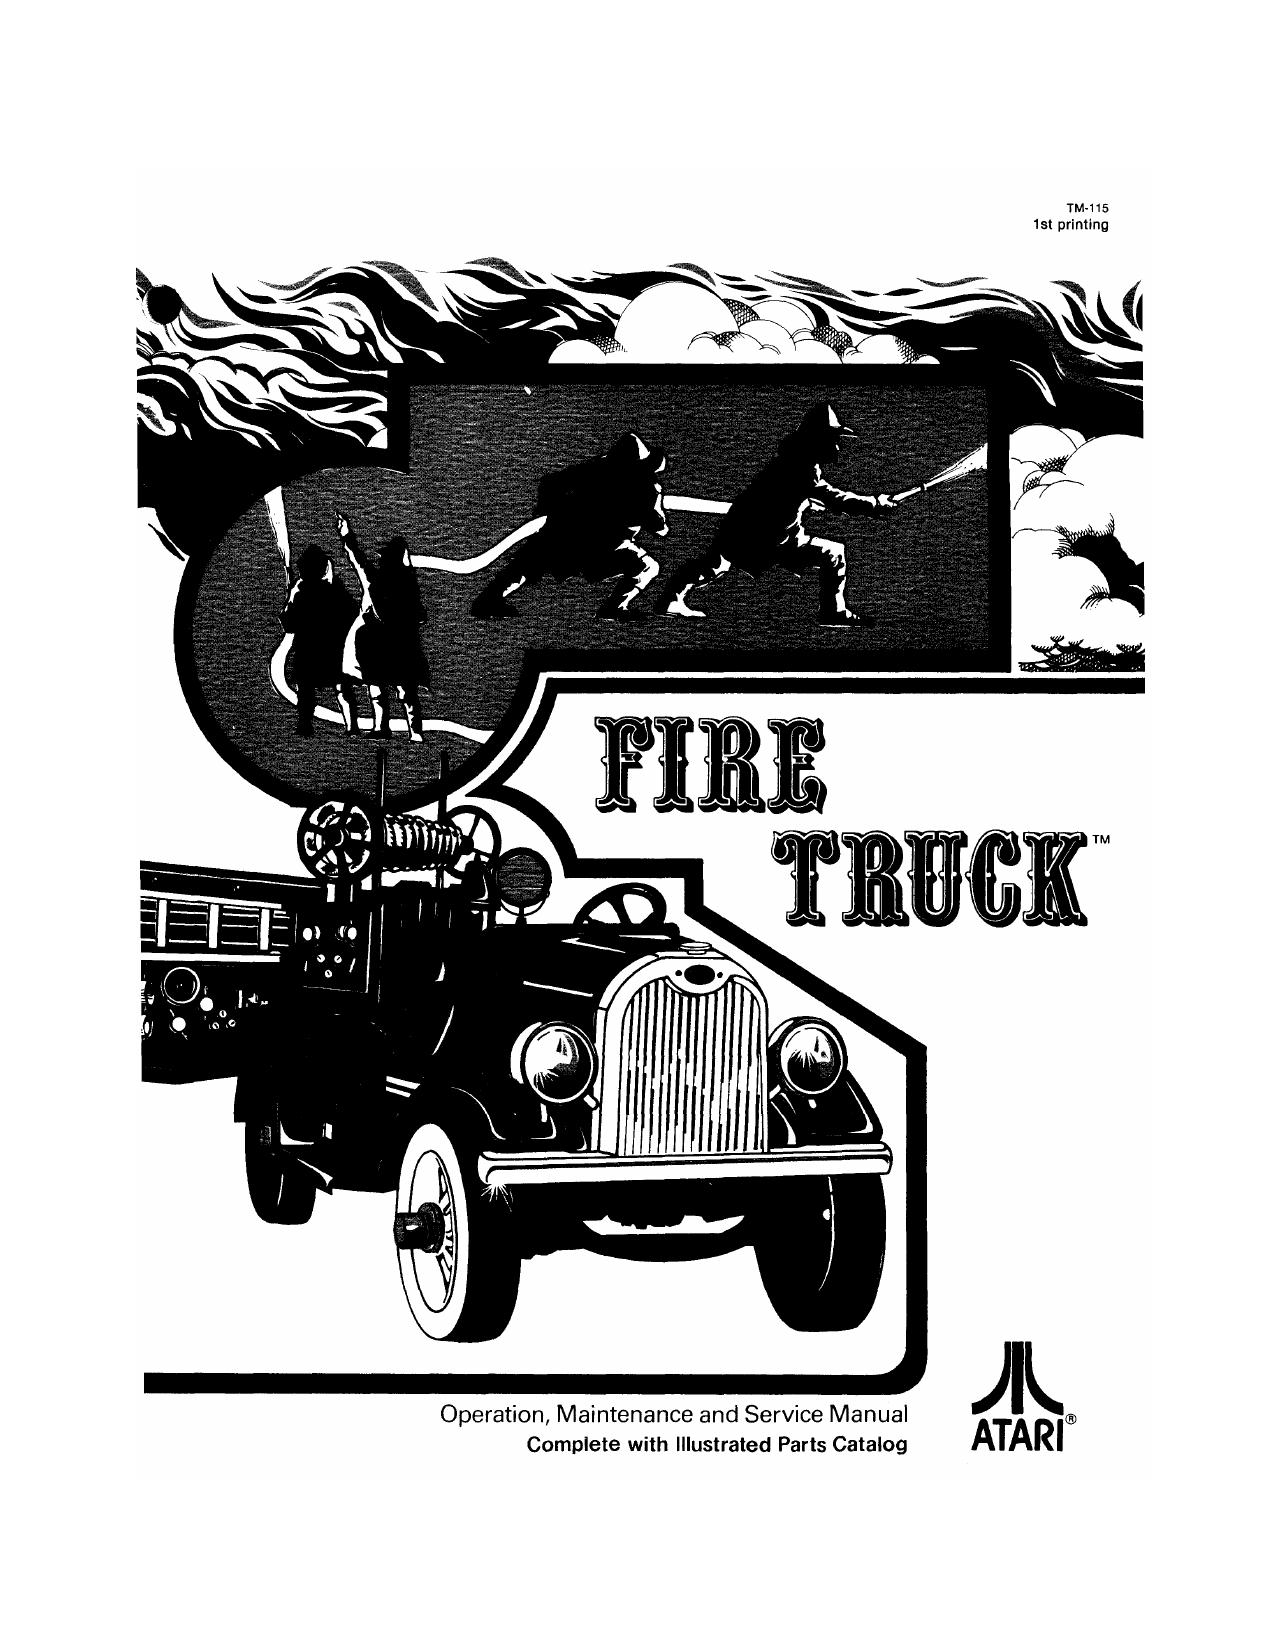 firetruck